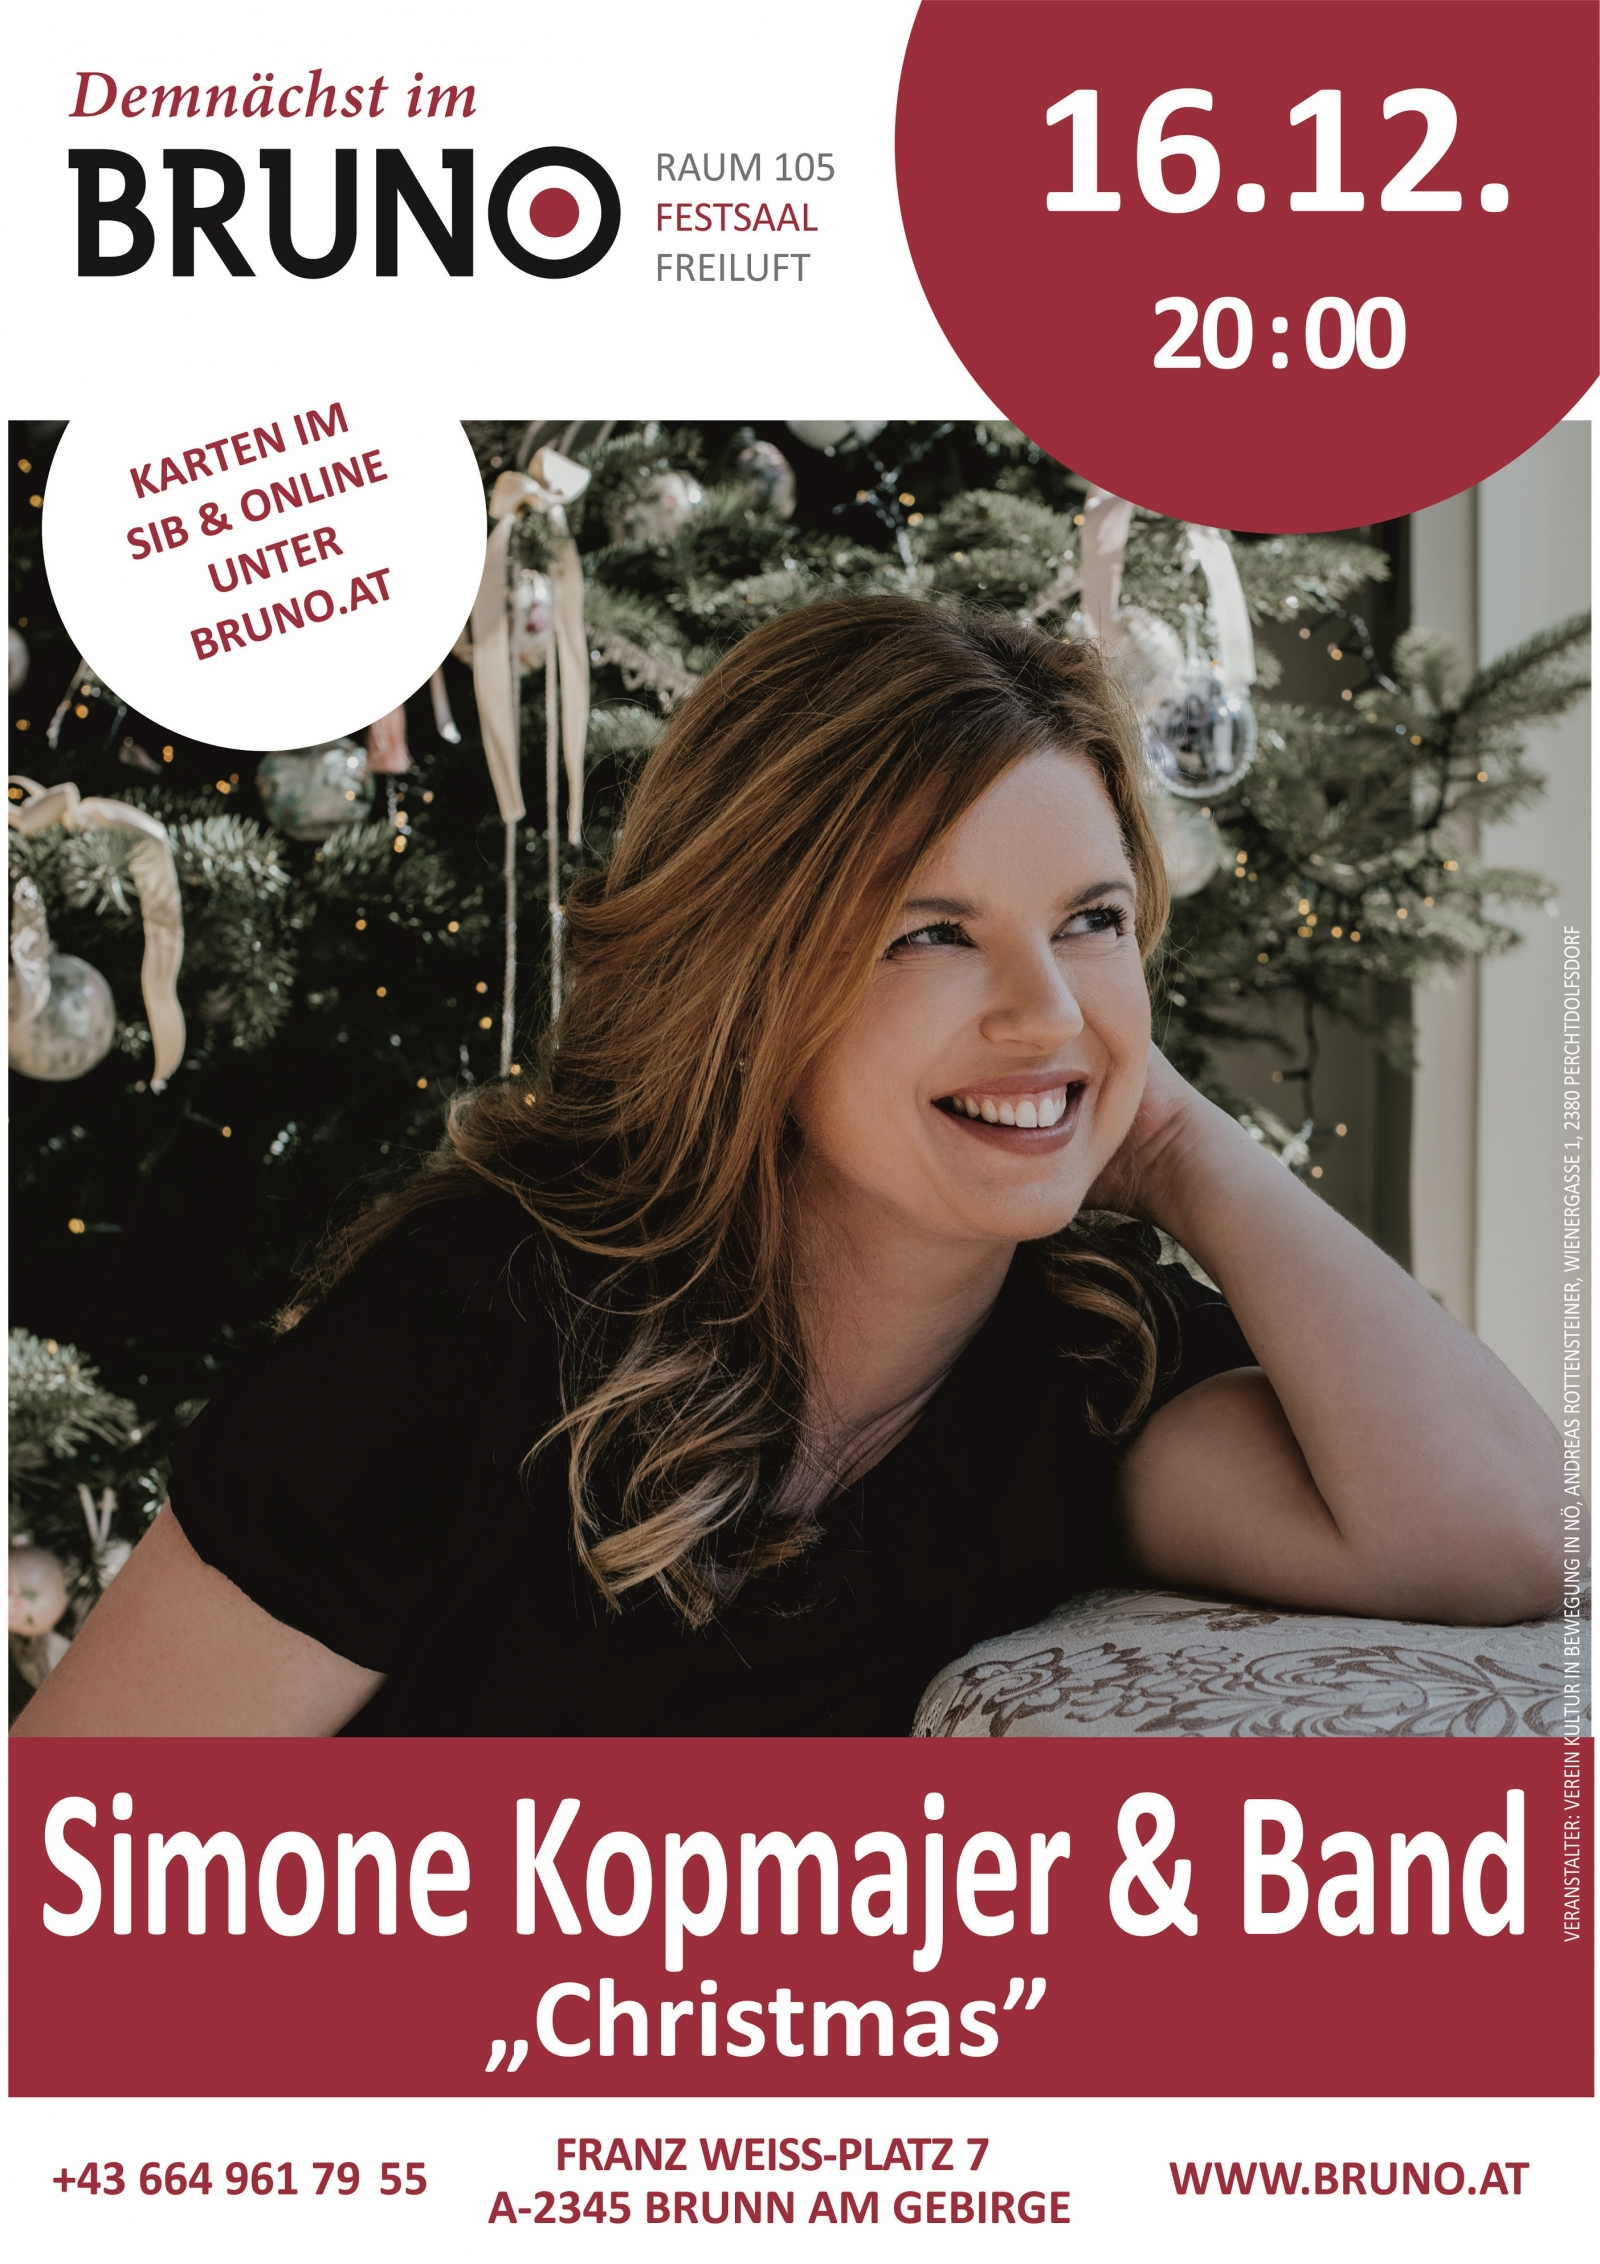 Simone Kopmajer & Band Christmas